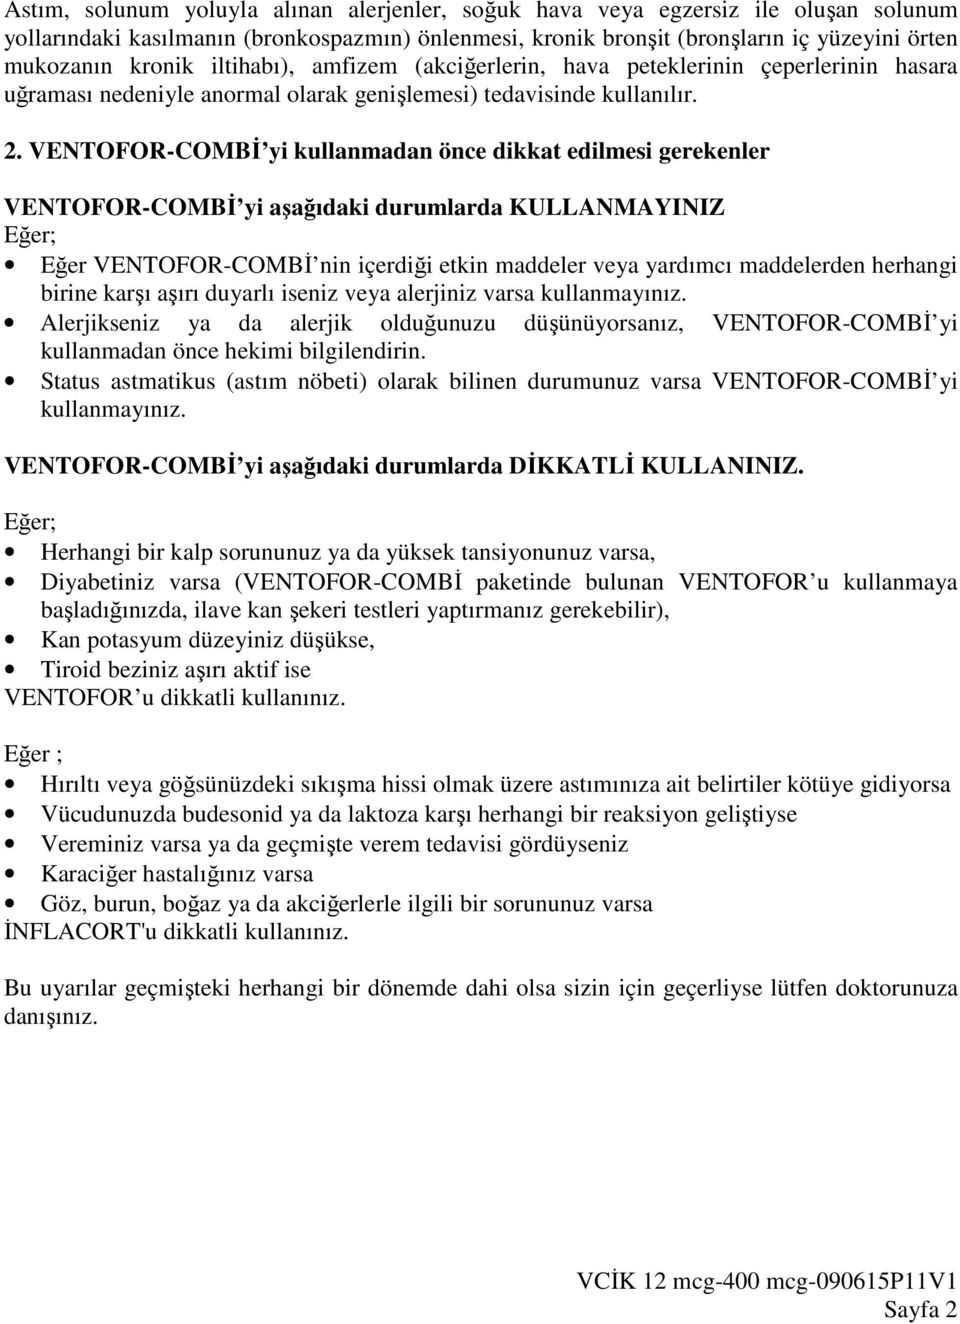 VENTOFOR-COMBĐ yi kullanmadan önce dikkat edilmesi gerekenler VENTOFOR-COMBĐ yi aşağıdaki durumlarda KULLANMAYINIZ Eğer; Eğer VENTOFOR-COMBĐ nin içerdiği etkin maddeler veya yardımcı maddelerden